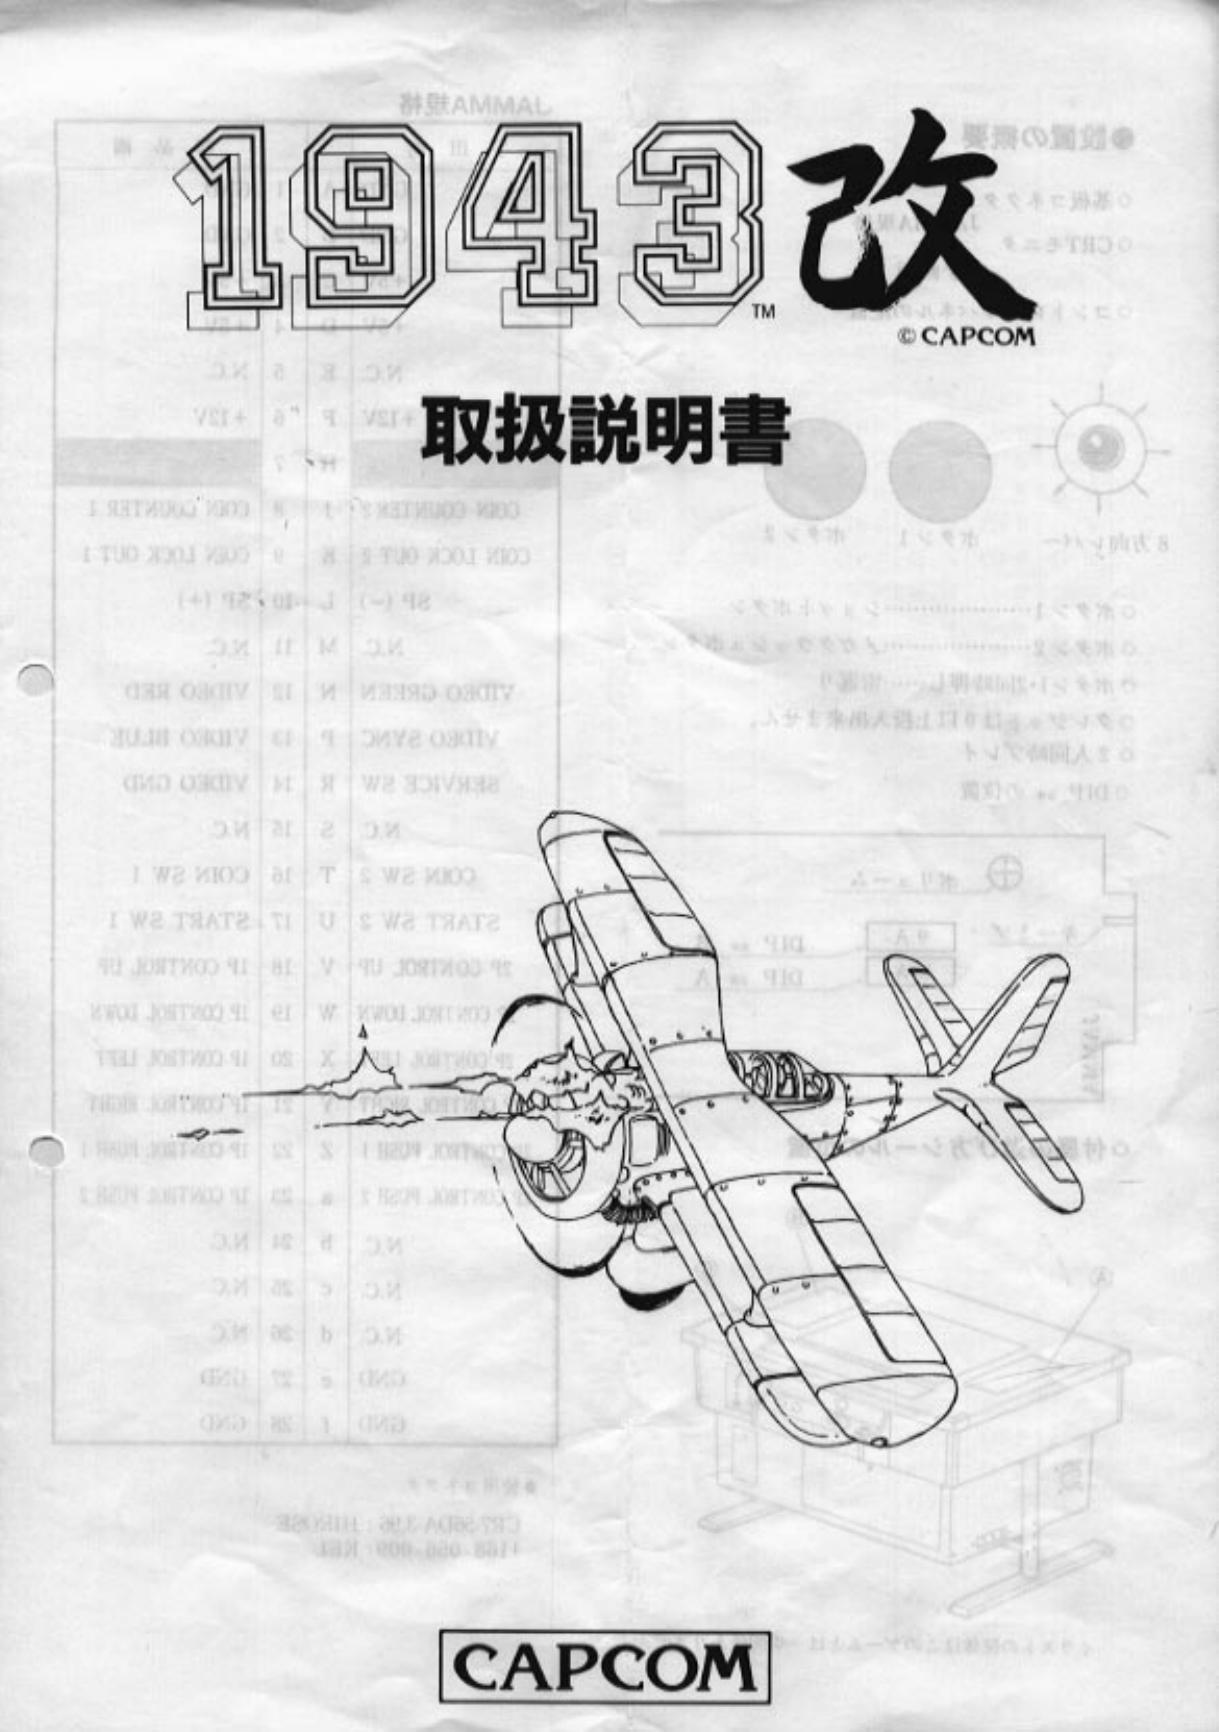 1943 (jap)